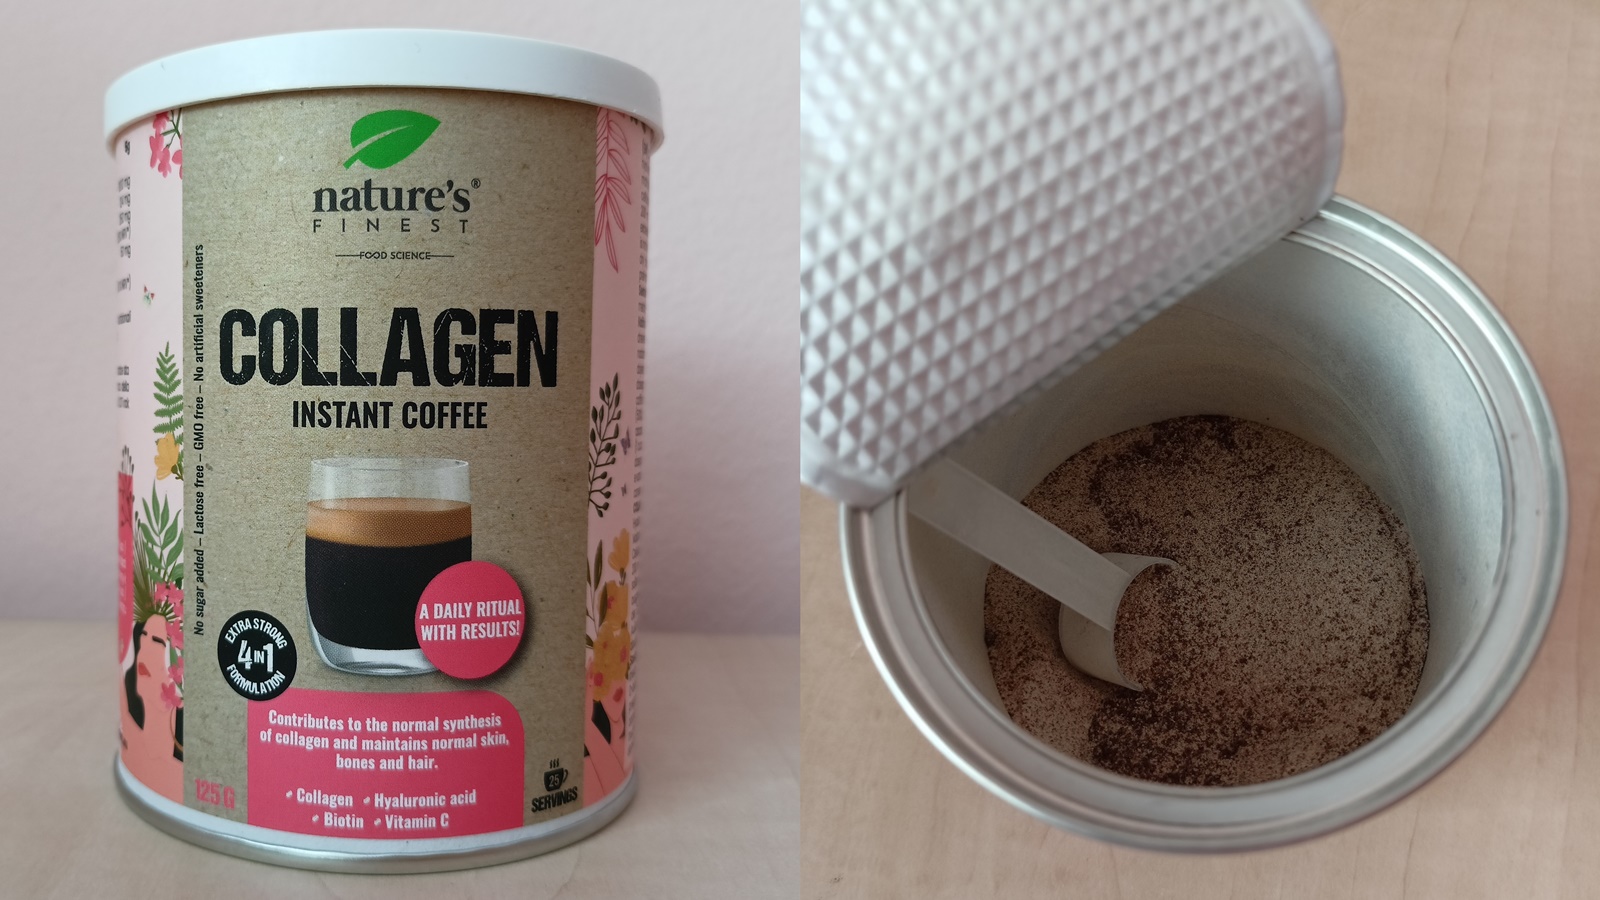 Testbericht: Collagen Instant Coffee von Nature’s Finest